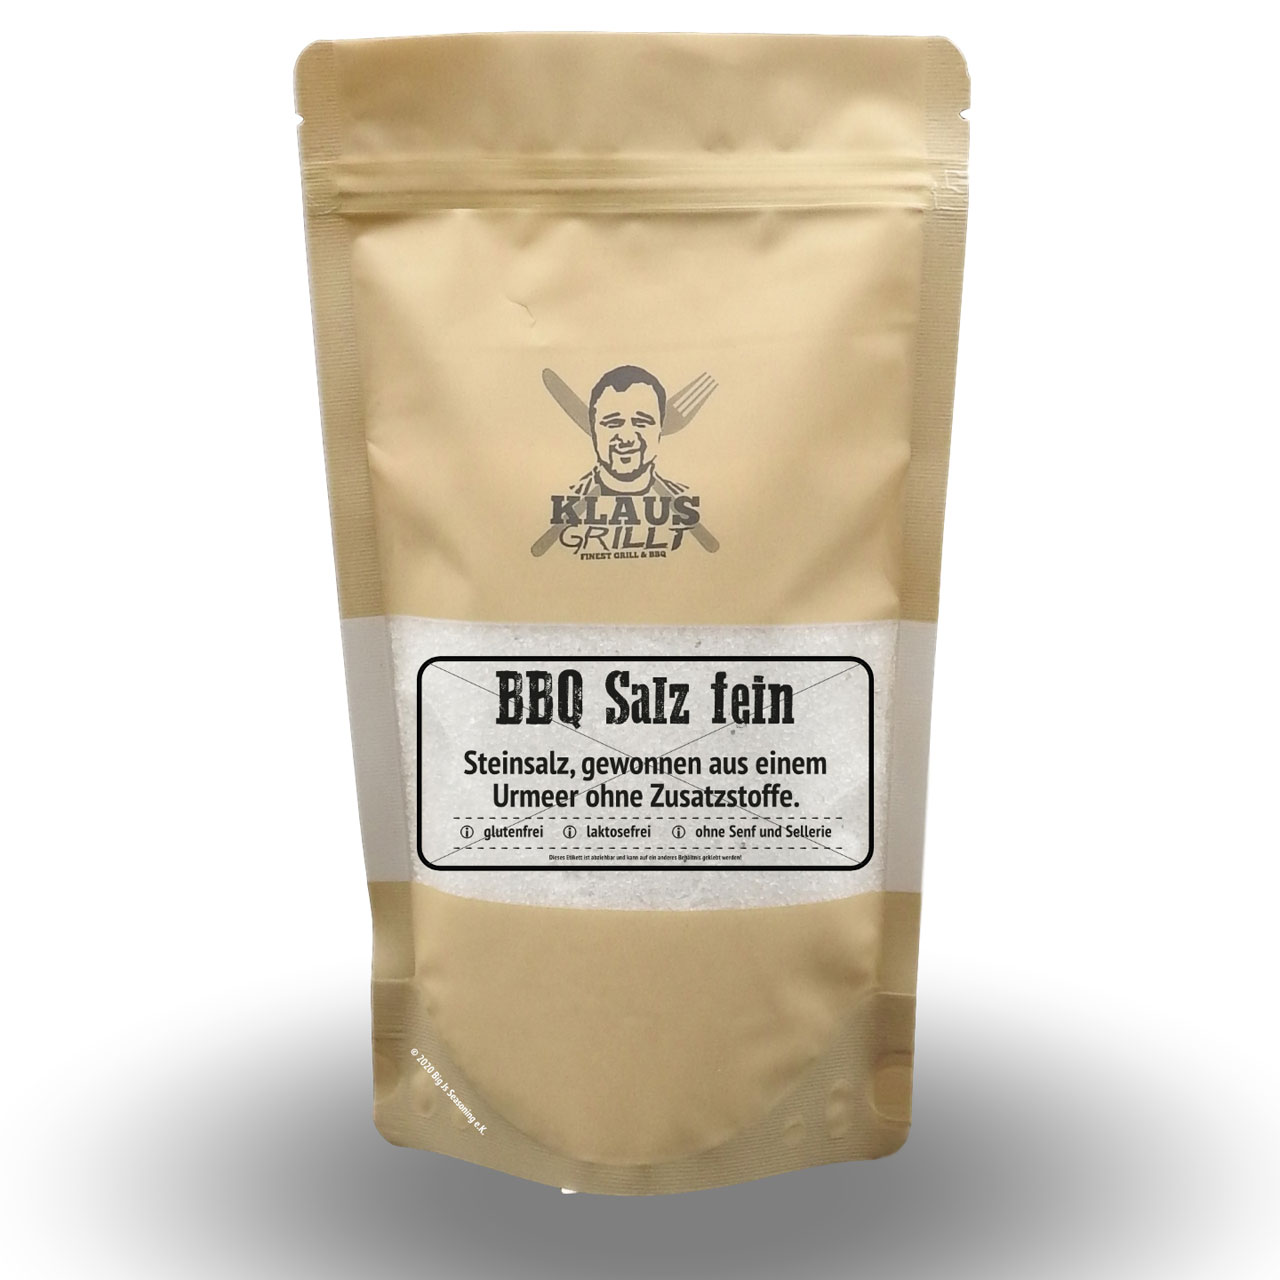 Klaus Grillt - BBQ Salz Fein 450 g